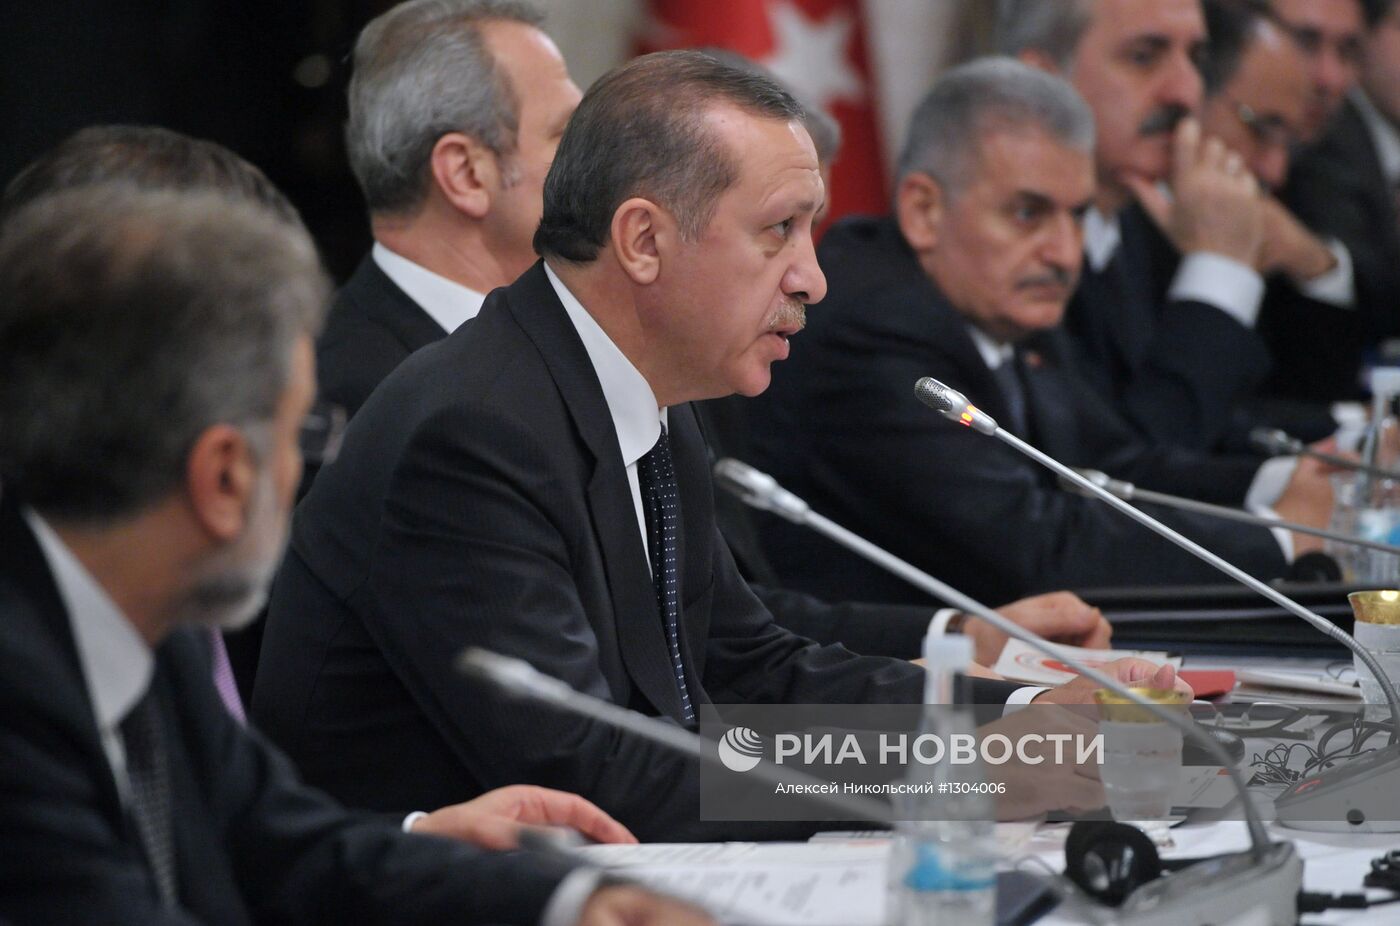 Рабочий визит президента РФ Владимира Путина в Турцию